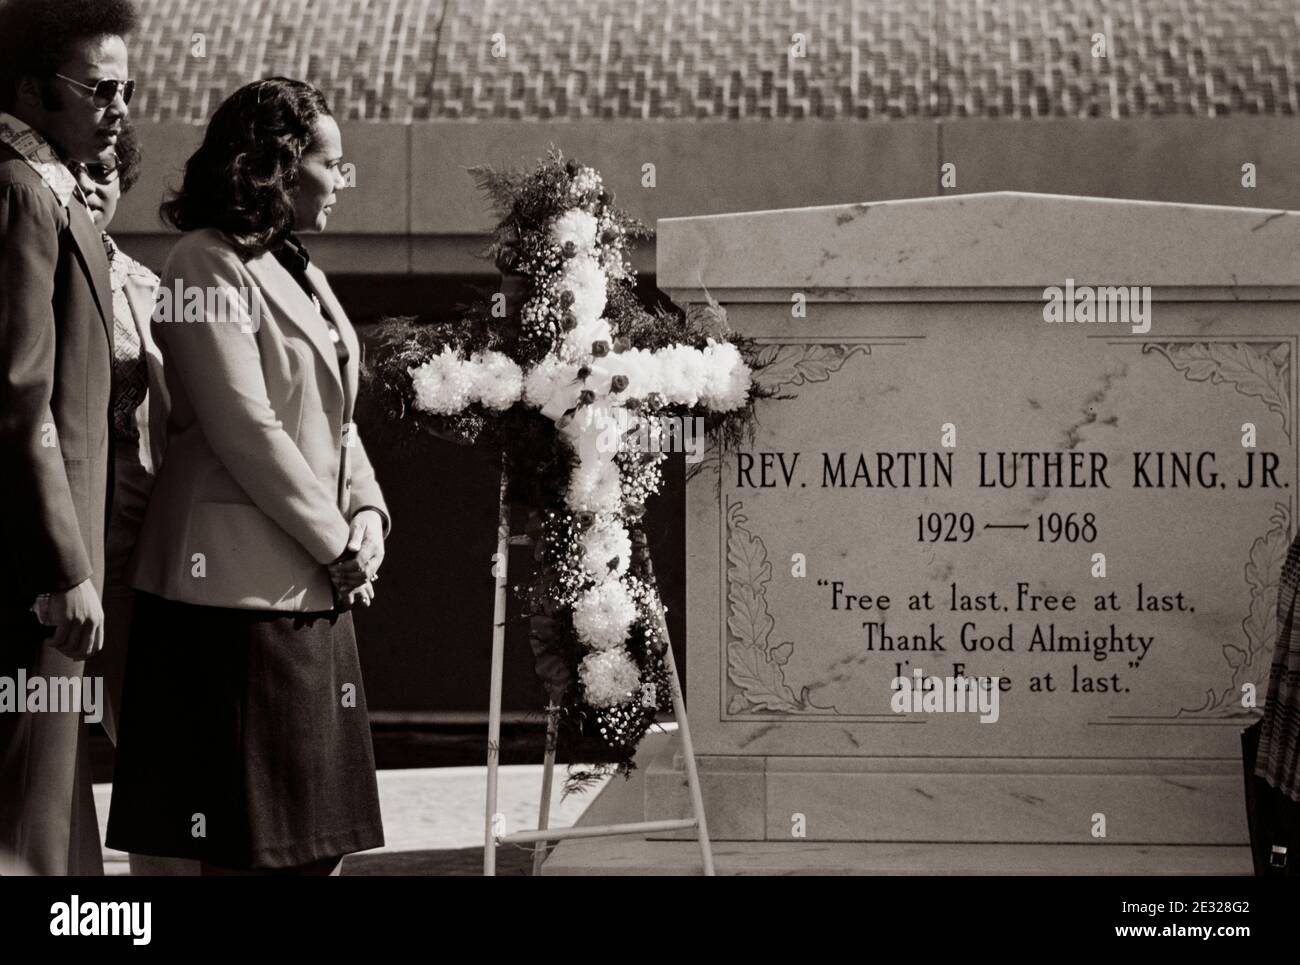 Coretta Scott King, vedova del leader dei diritti civili ucciso, Dr. Martin Luther King, Jr., presso la tomba di suo marito al King Center di Atlanta, Georgia. Foto Stock